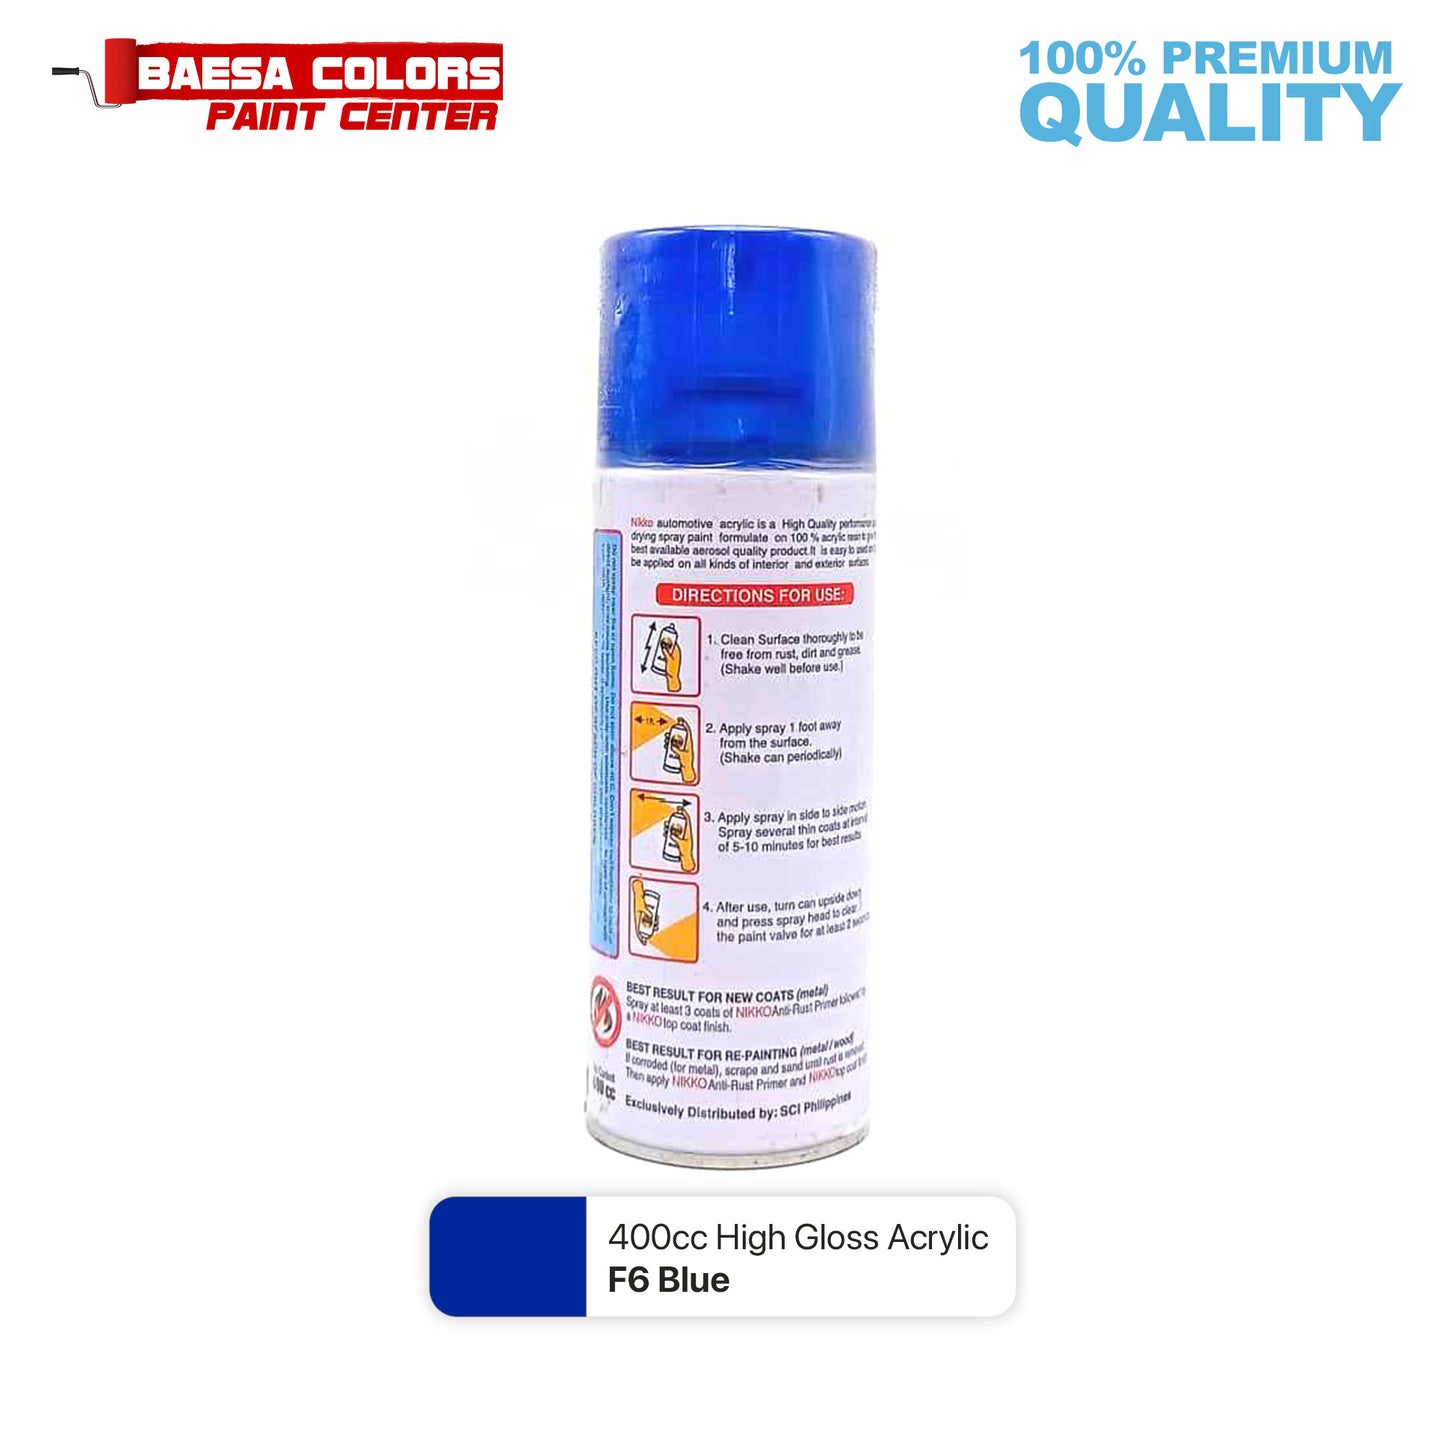 Nikko Acrylic-Based Spray Paint Flourescent F6 Blue 400cc